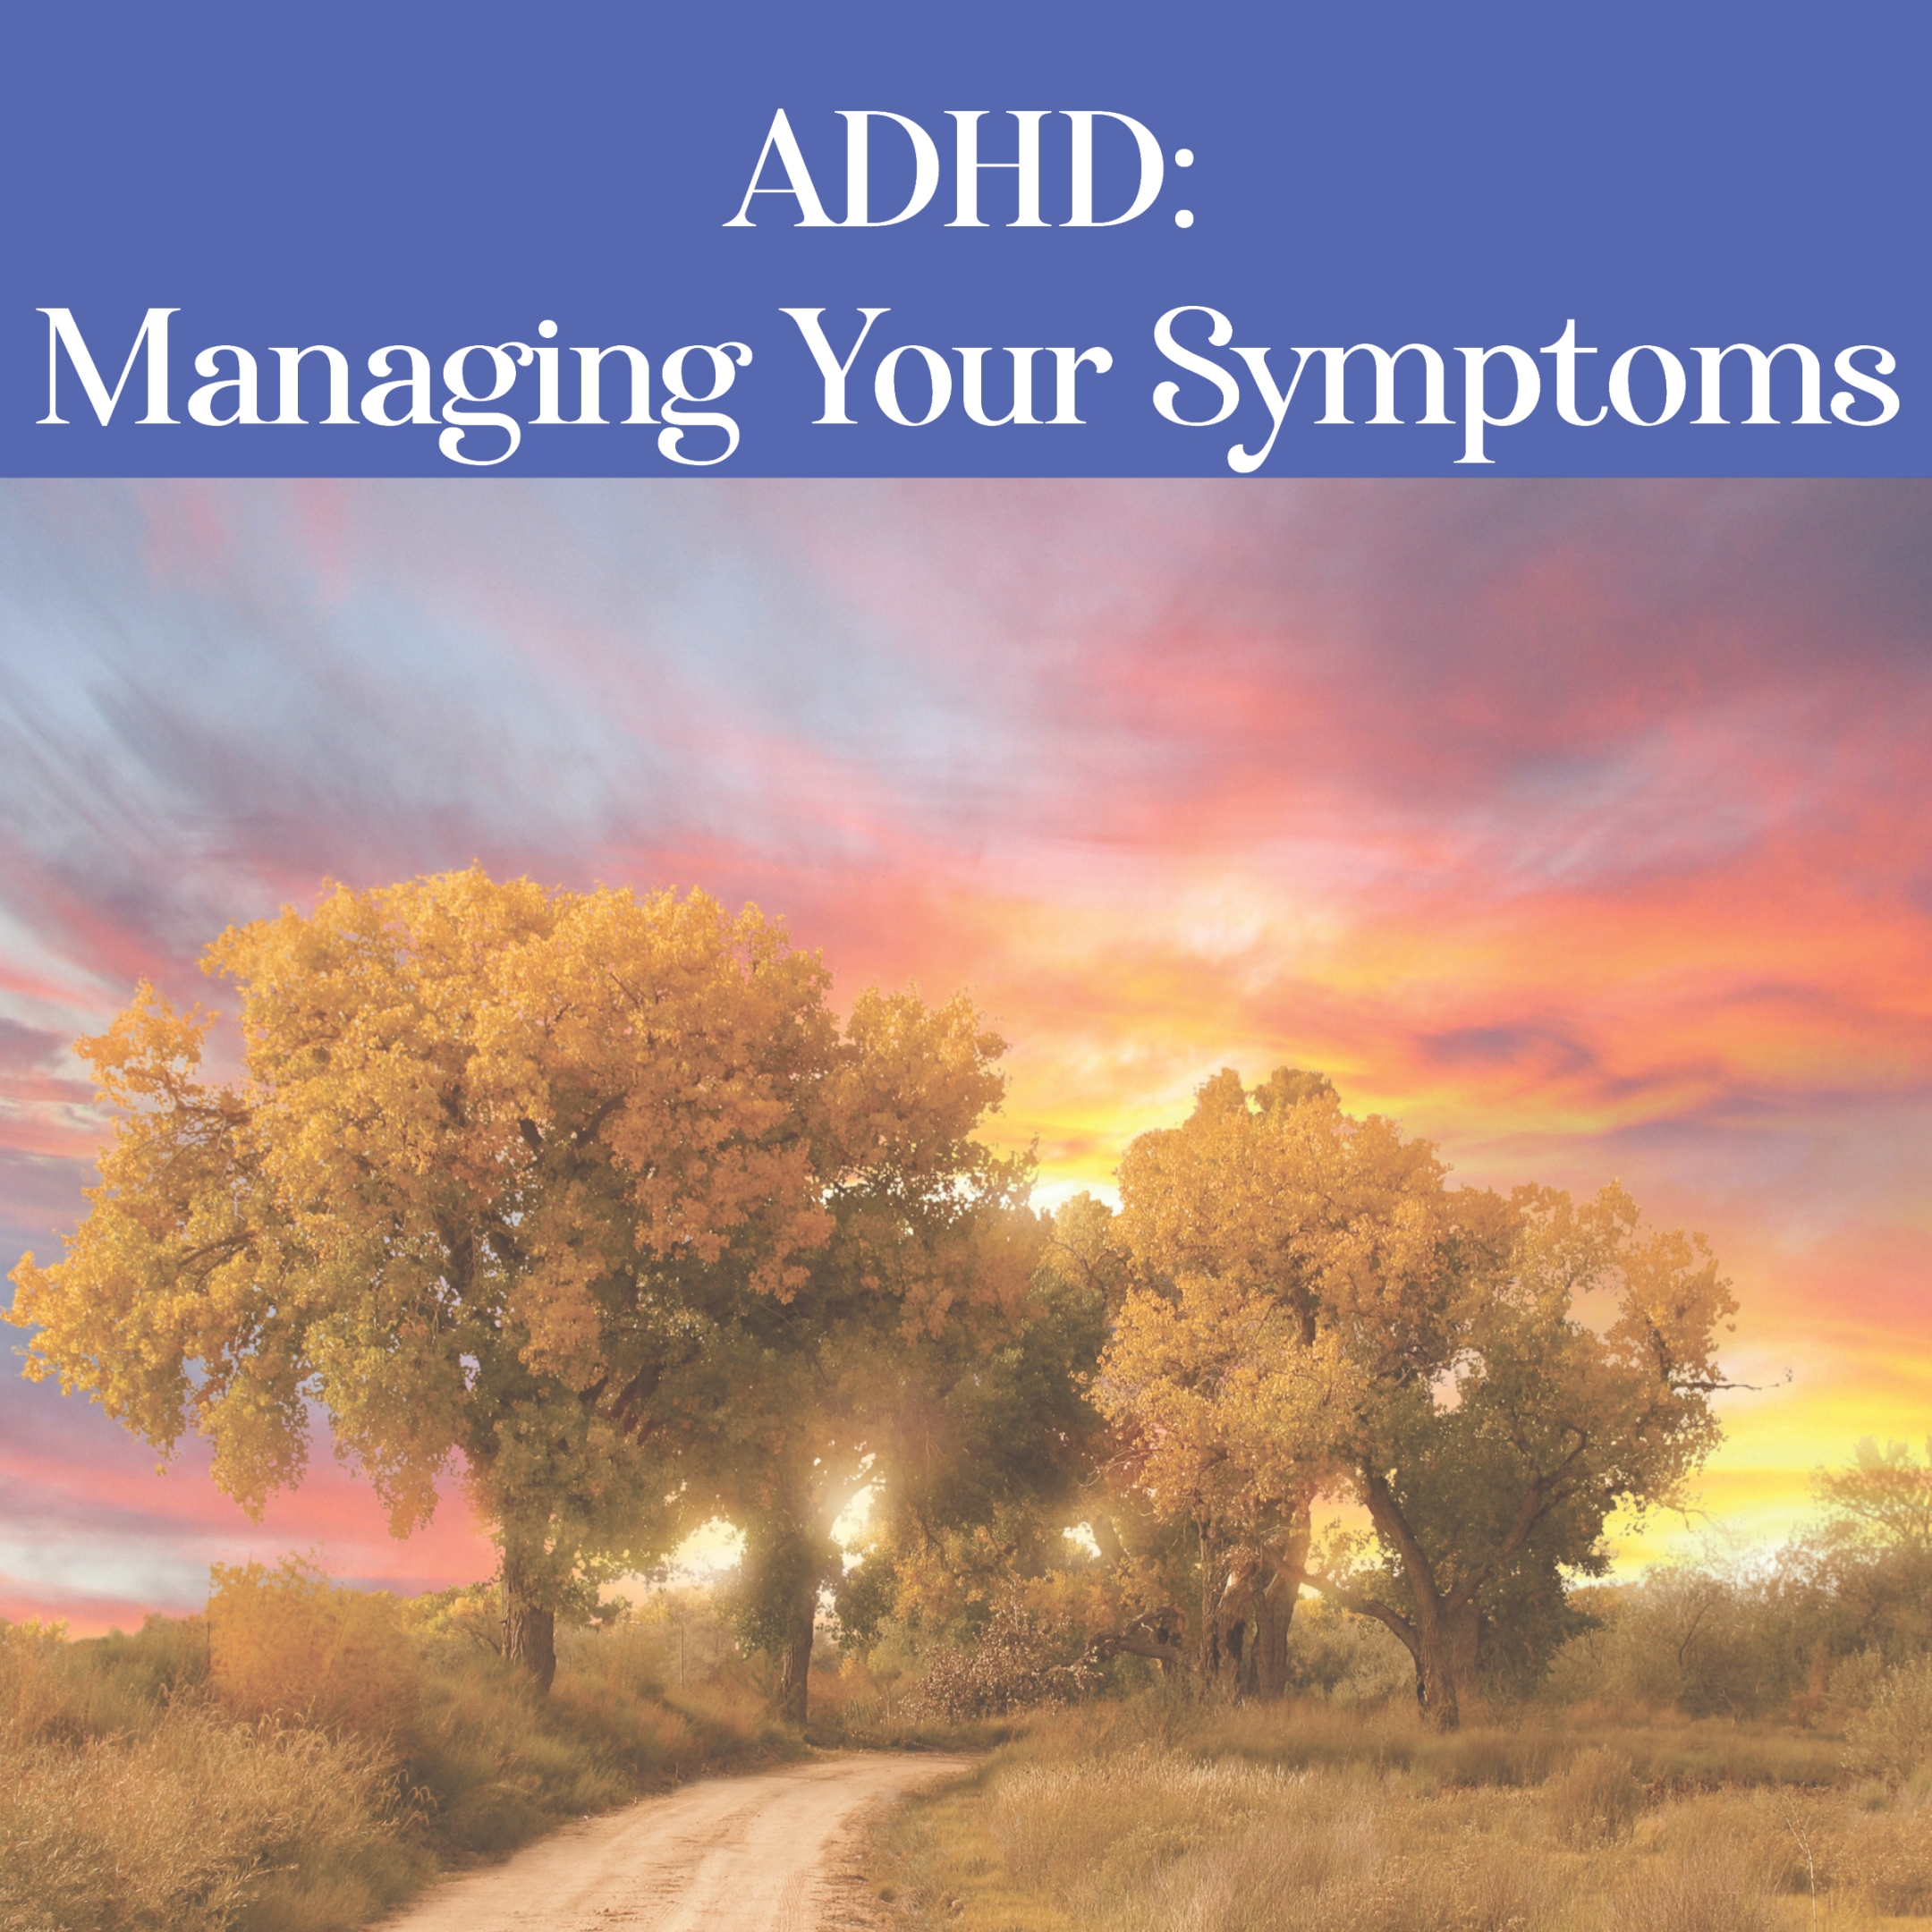 ADHD: Managing Your Symptoms